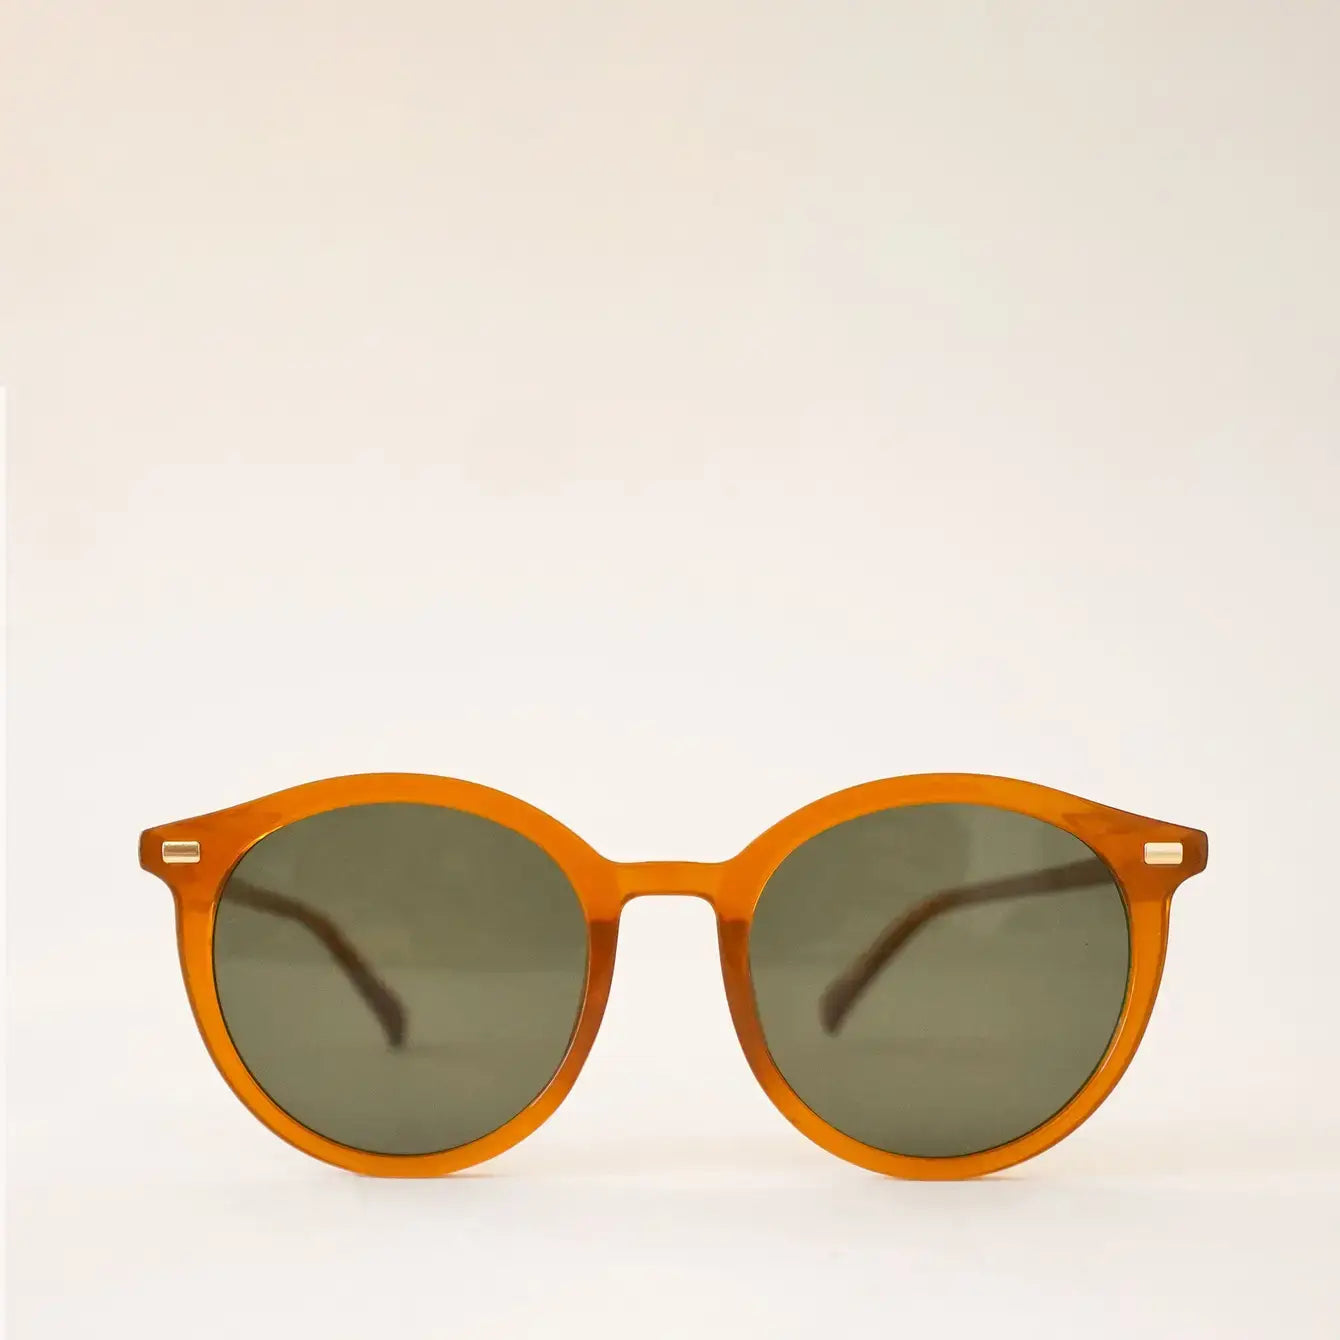 sam sunglasses in orange